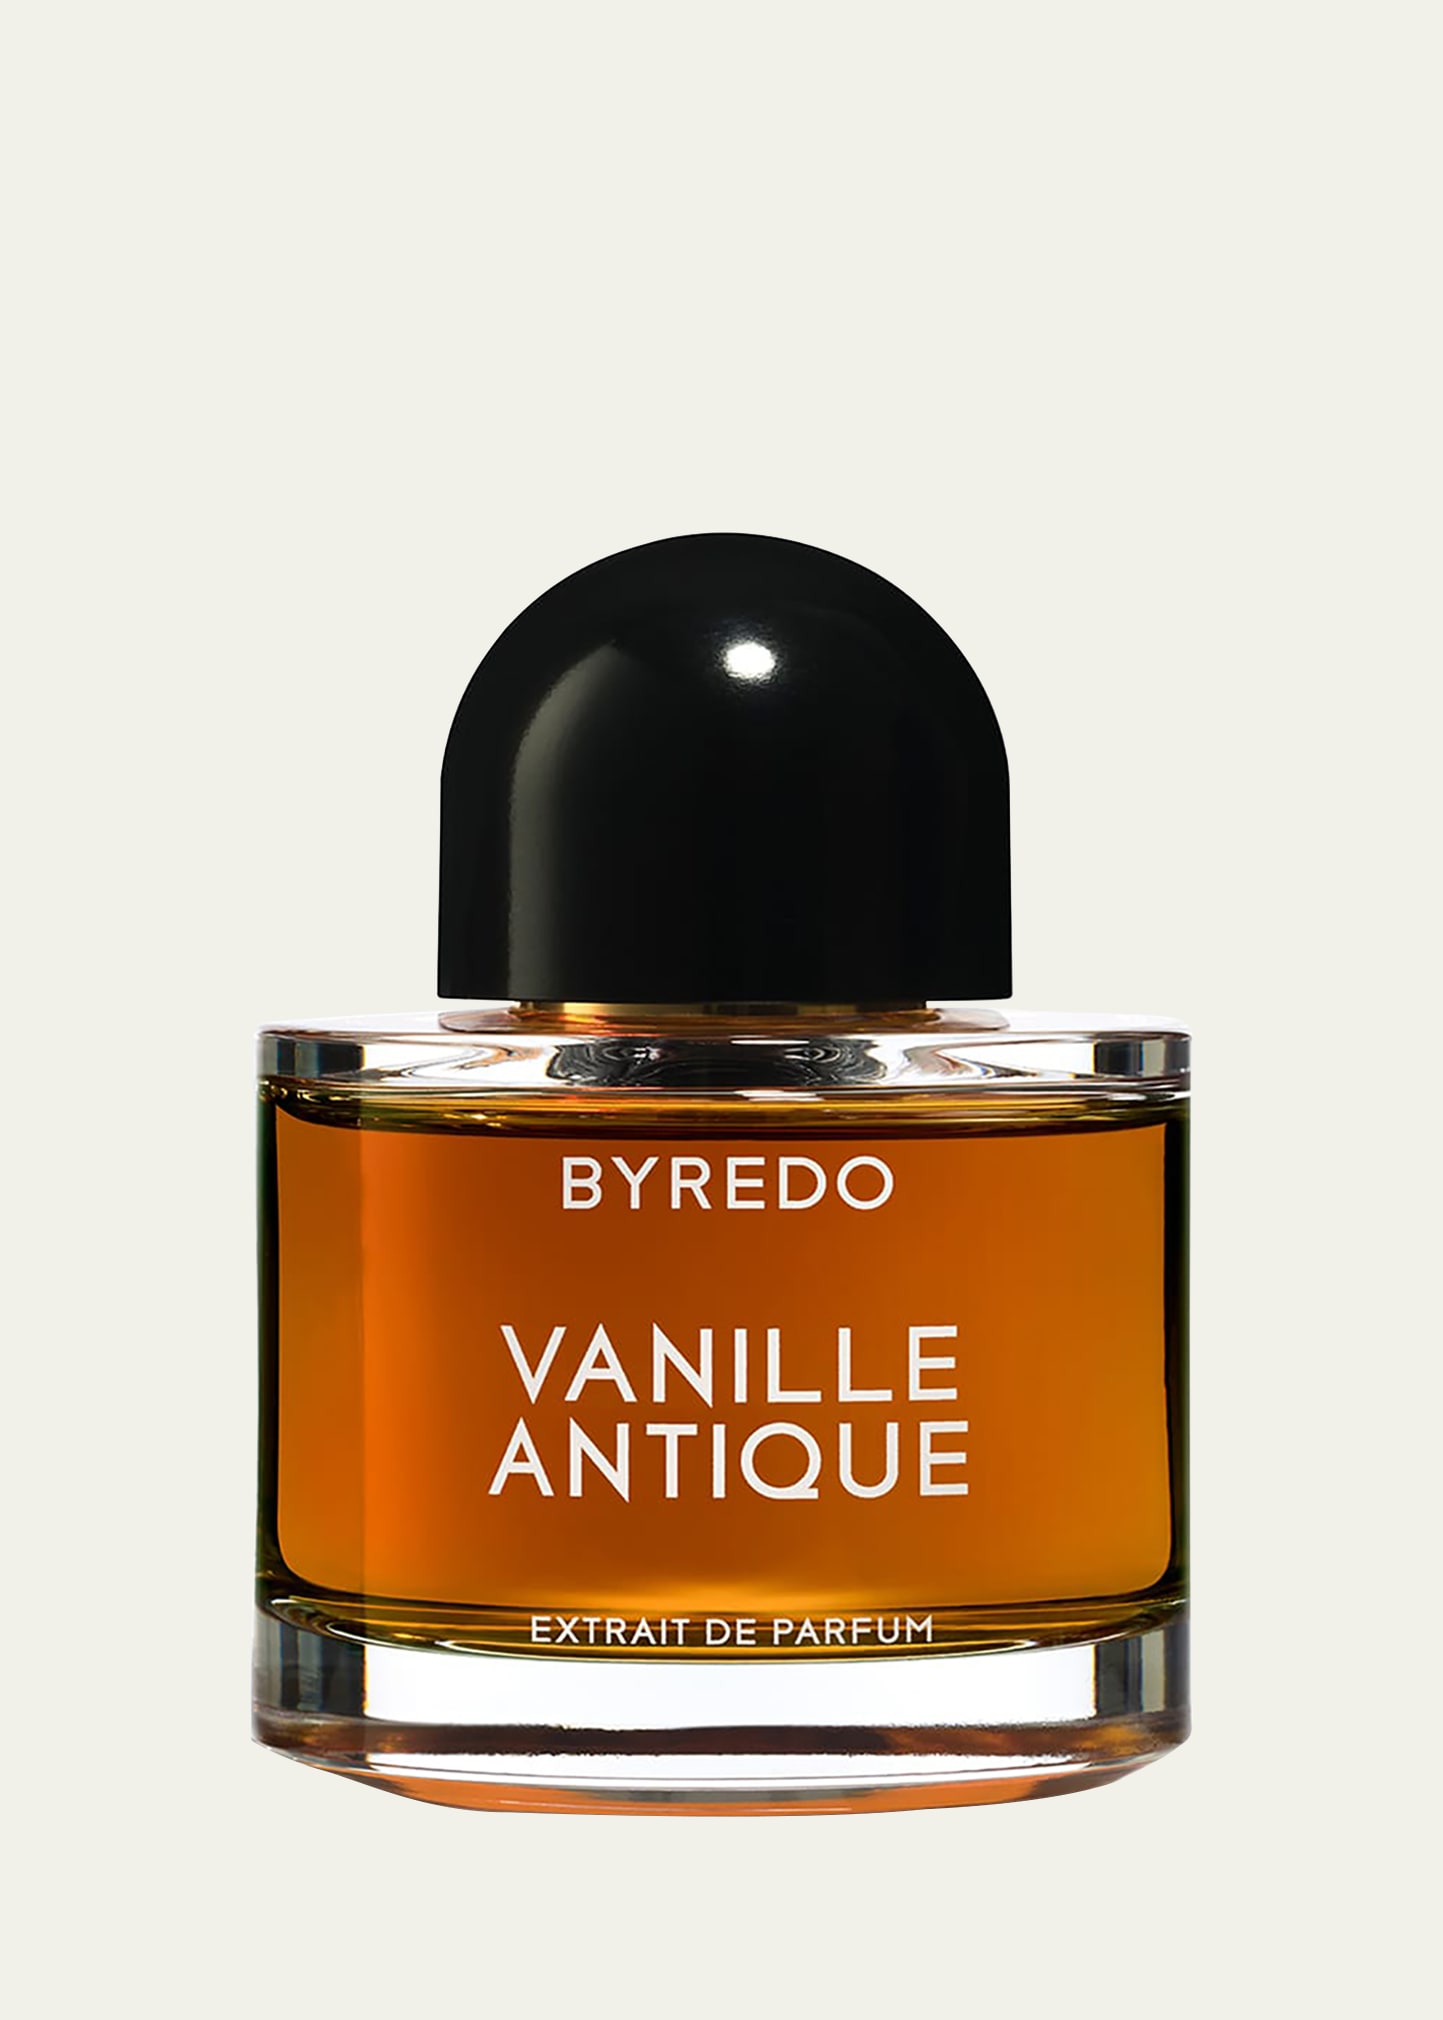 Vanille Antique Extrait de Parfum, 1.7 oz.